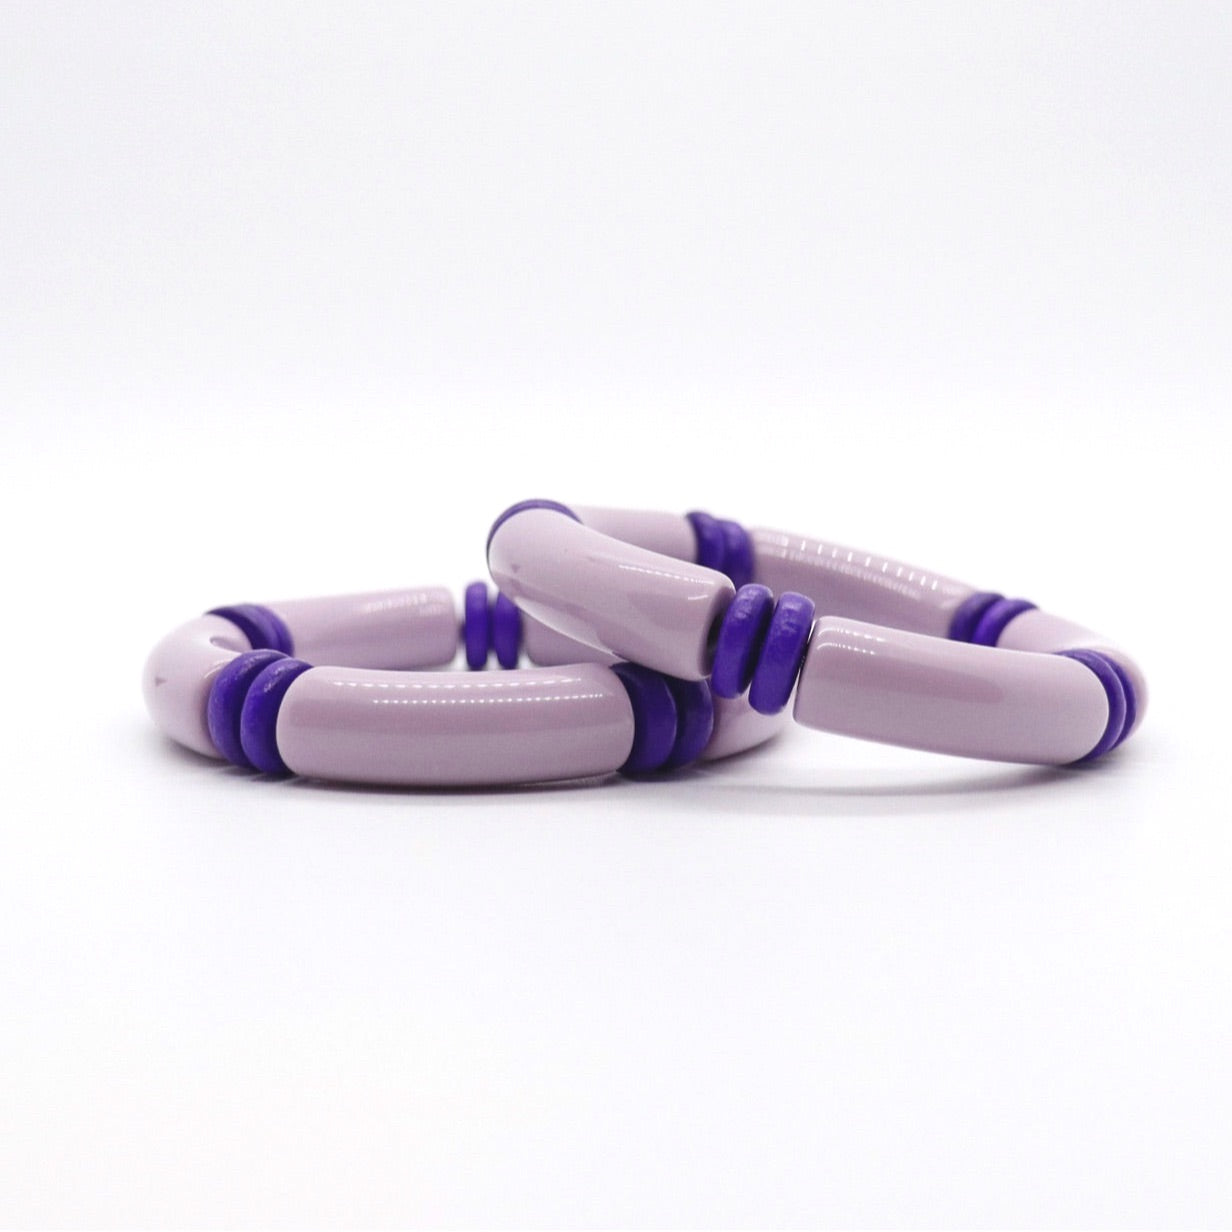 Ultra Classic Bracelet in Purple